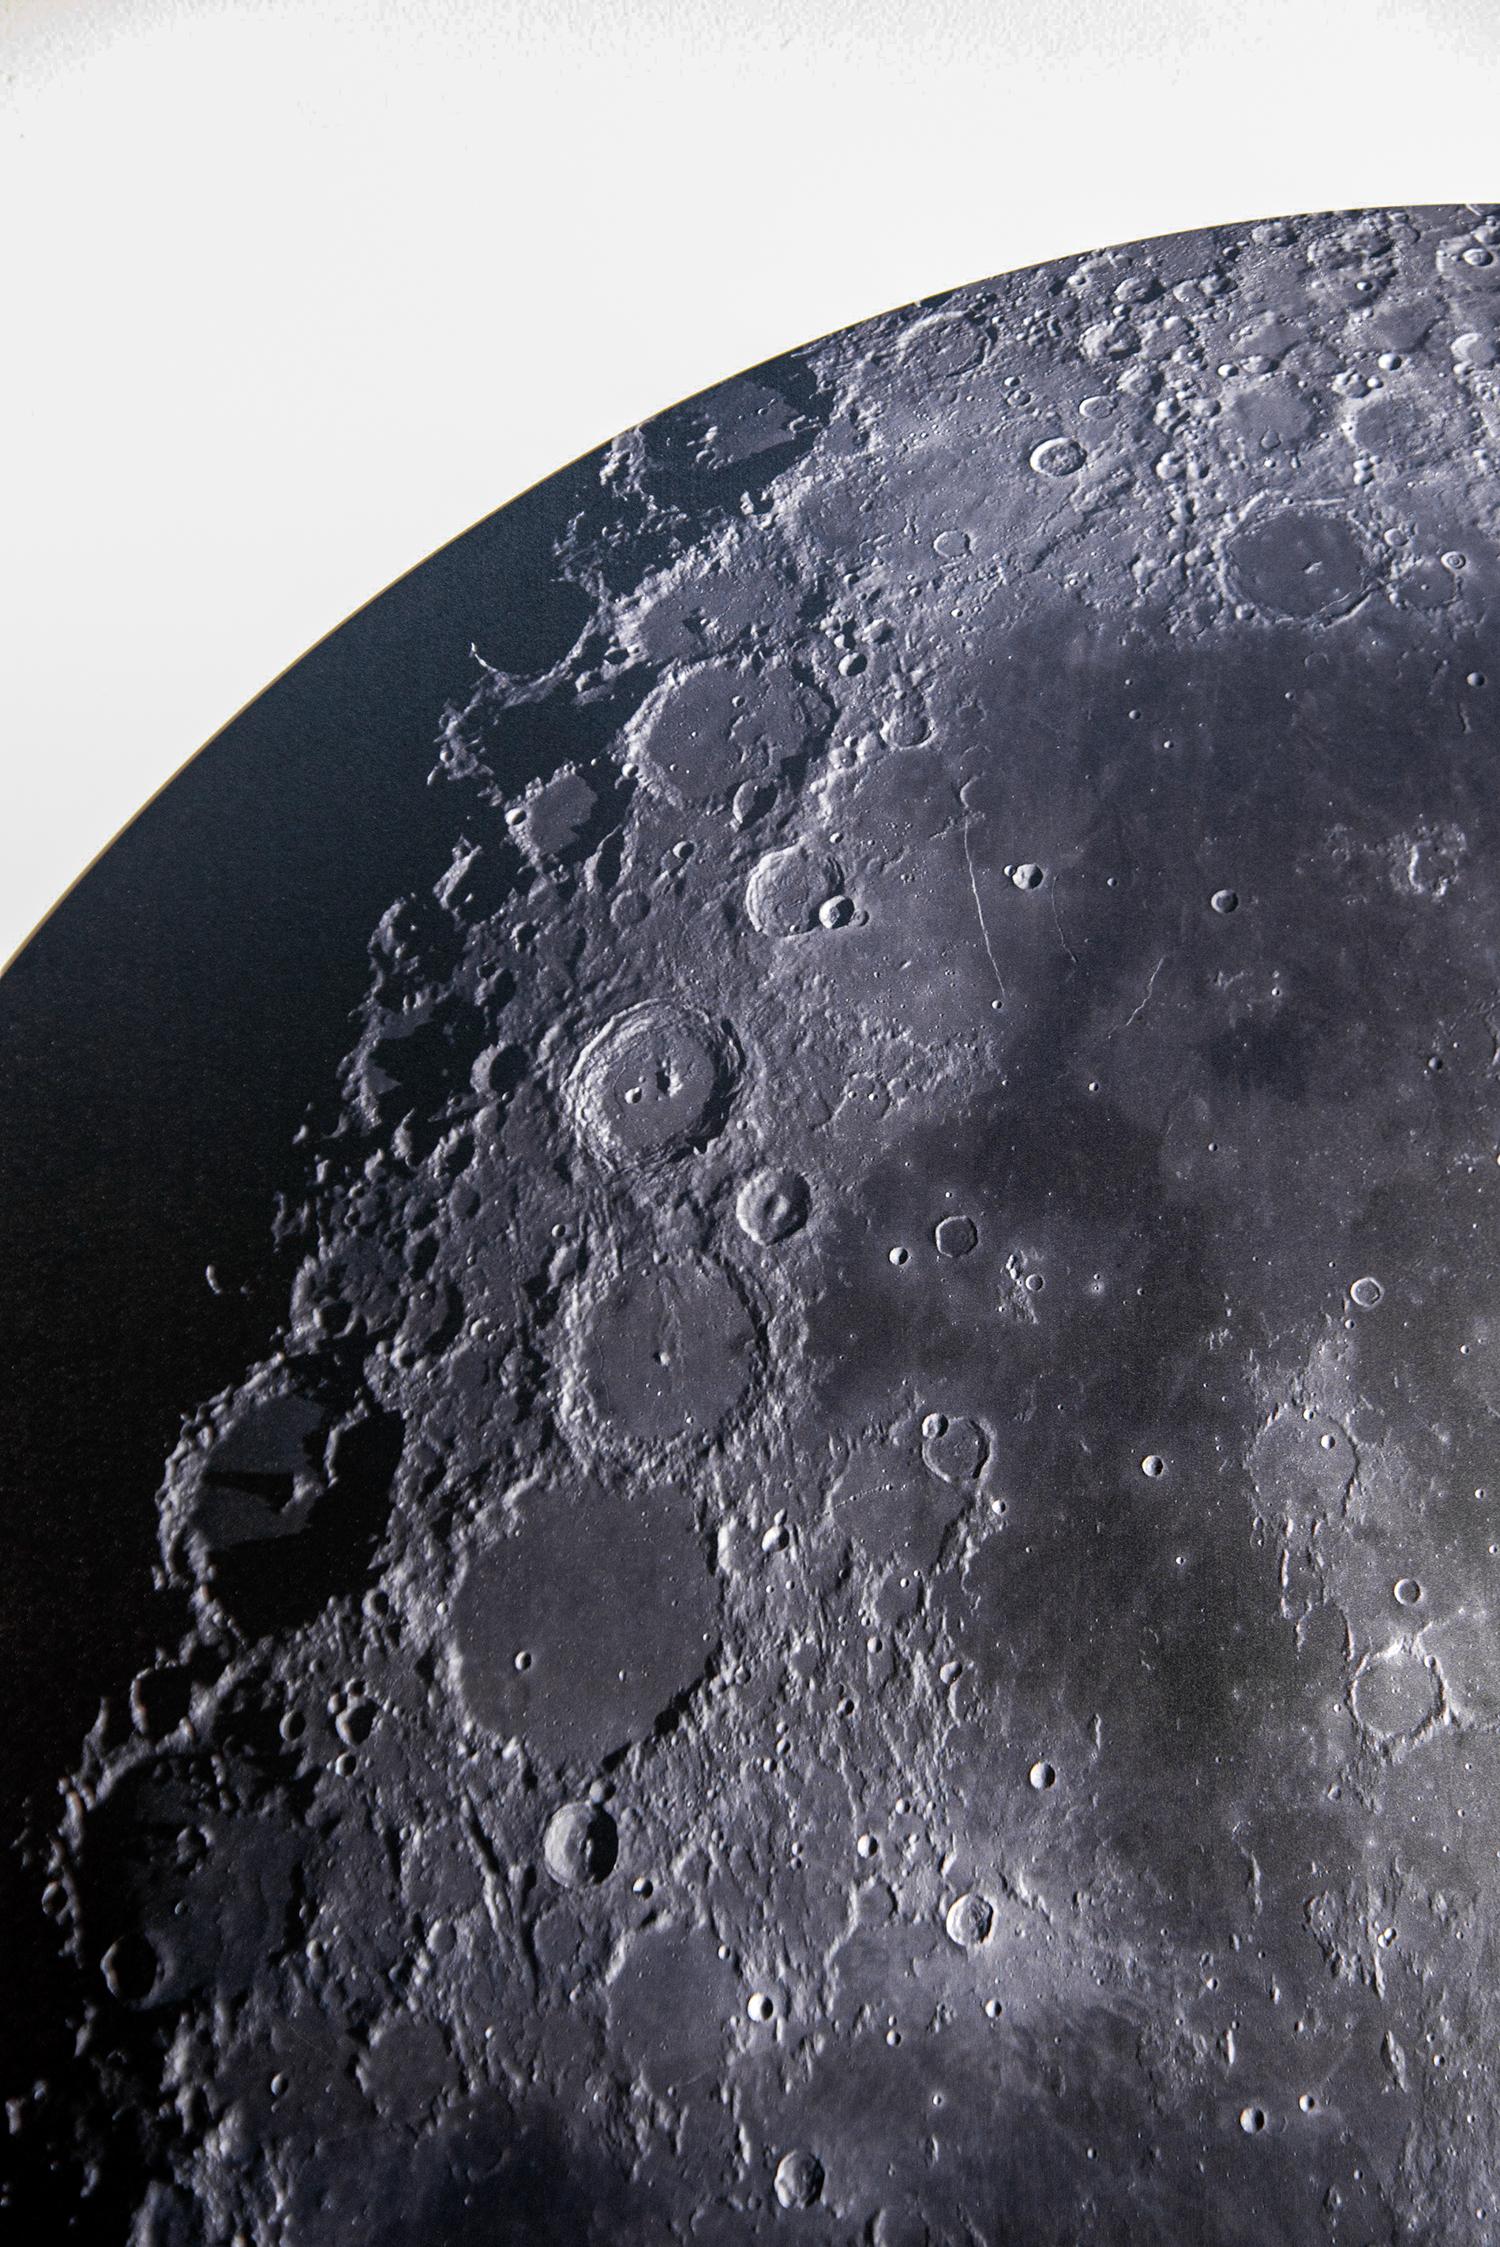 Als Kind besaß Ryan Van Der Hout ein Teleskop und war vom Anblick des Mondes am Nachthimmel fasziniert. Dieses ikonische Bild des Mondes, wie er von der Erde aus gesehen wird, wird neu interpretiert, wenn Van Der Hout den von ihm erstellten